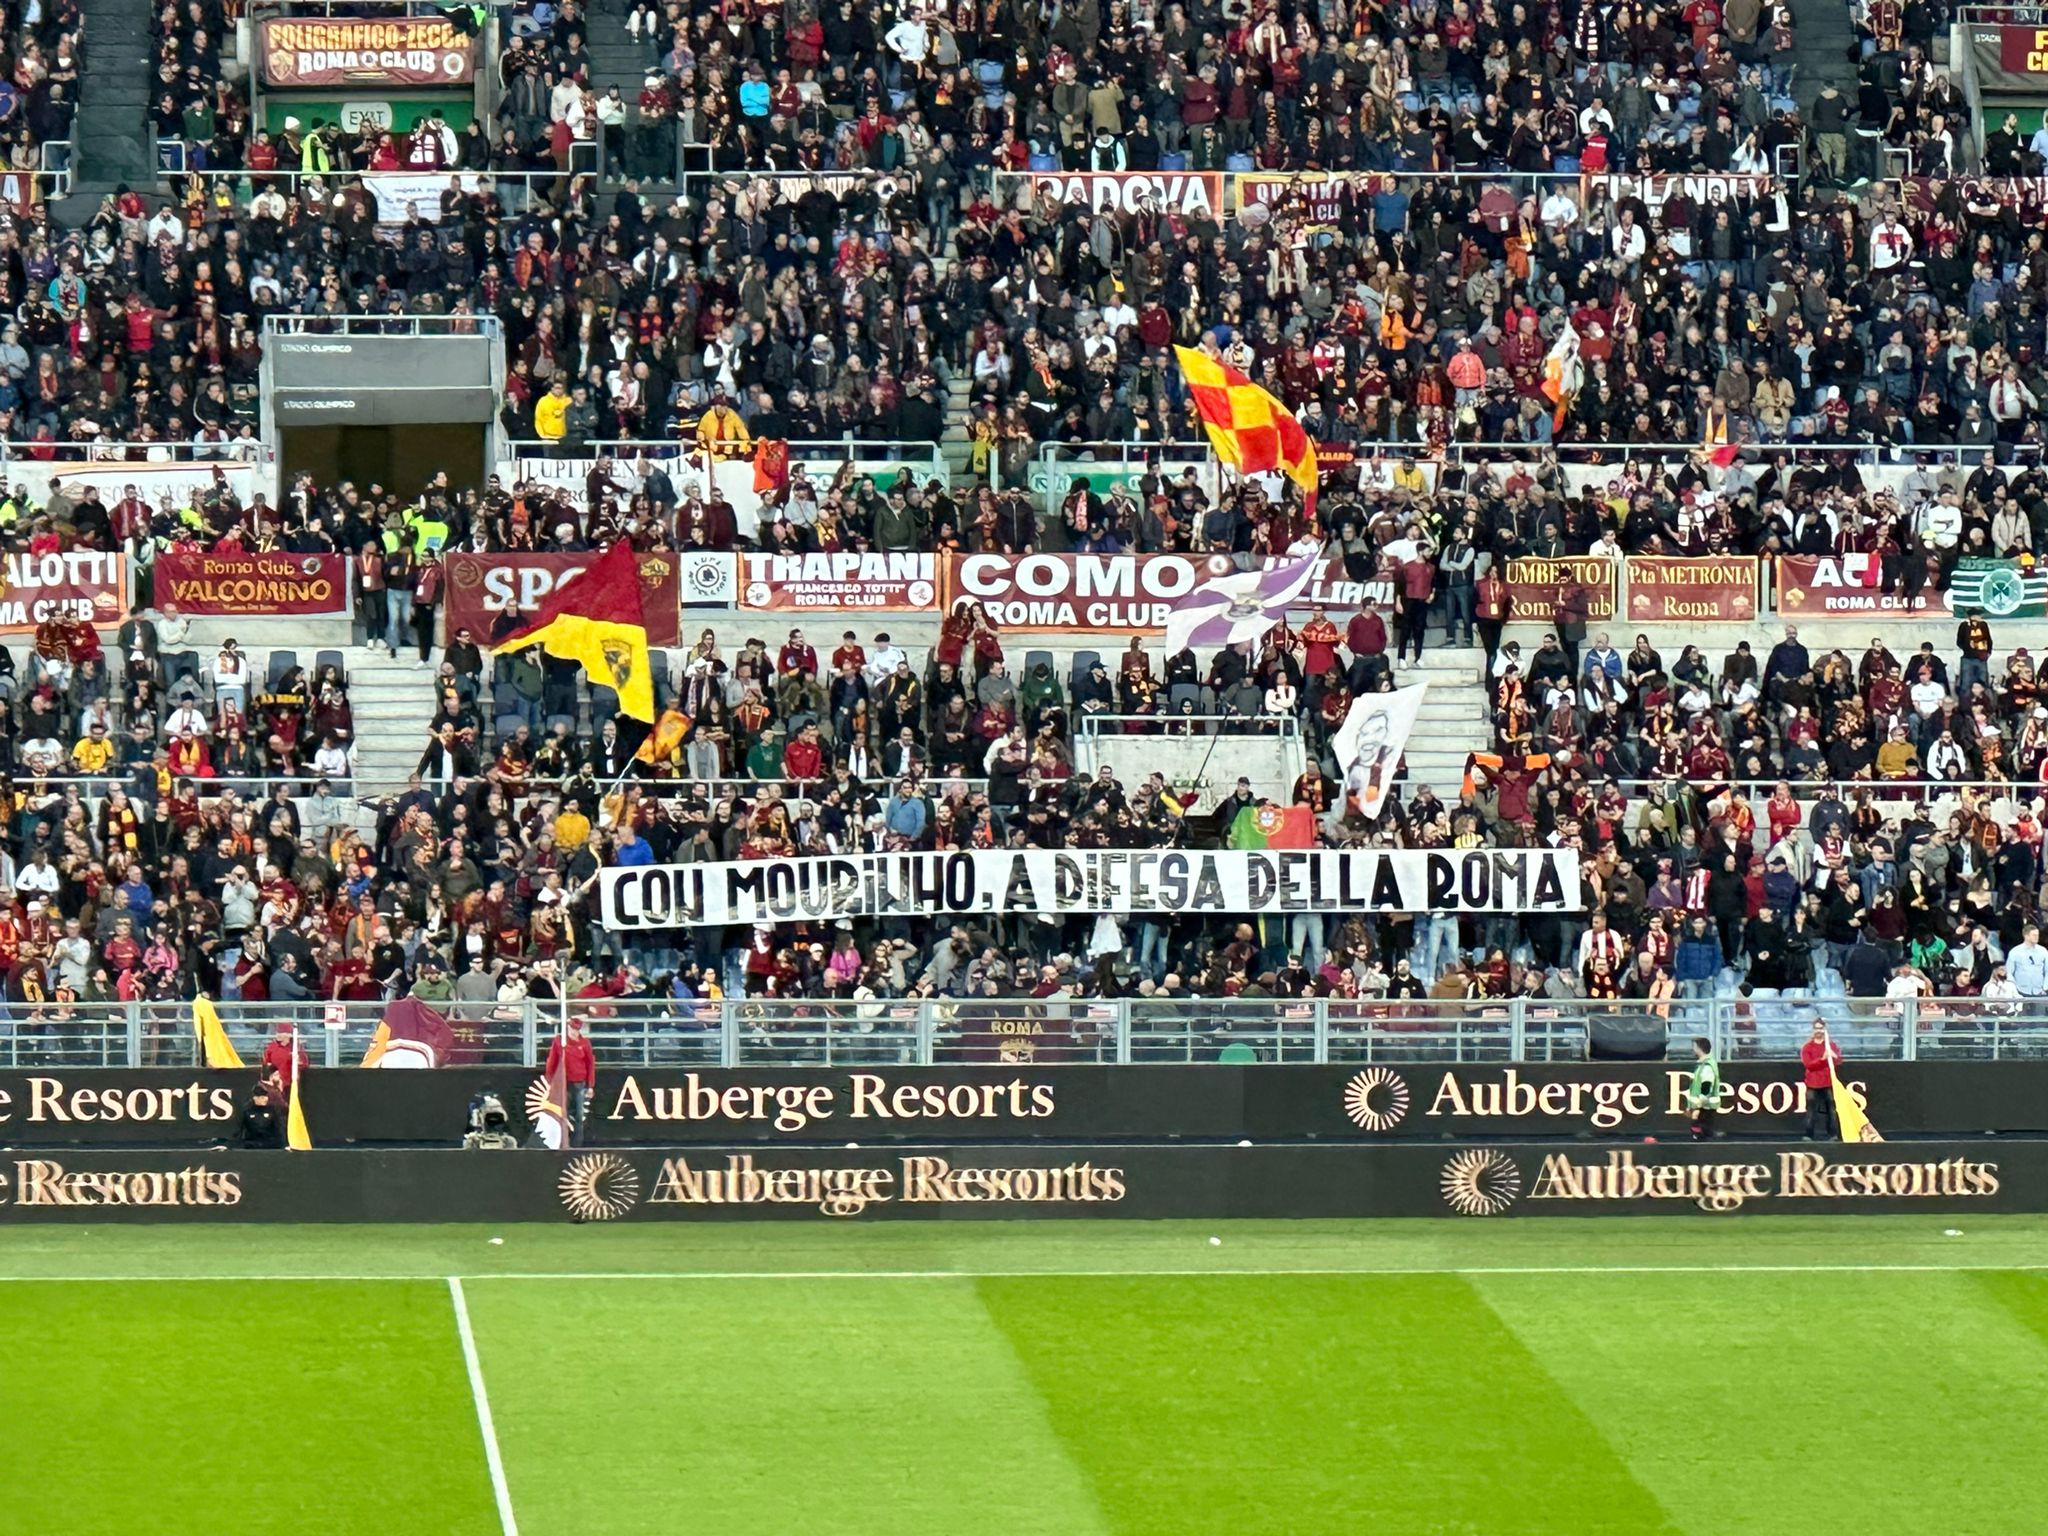 Lo striscione dei tifosi a sostegno di Mourinho